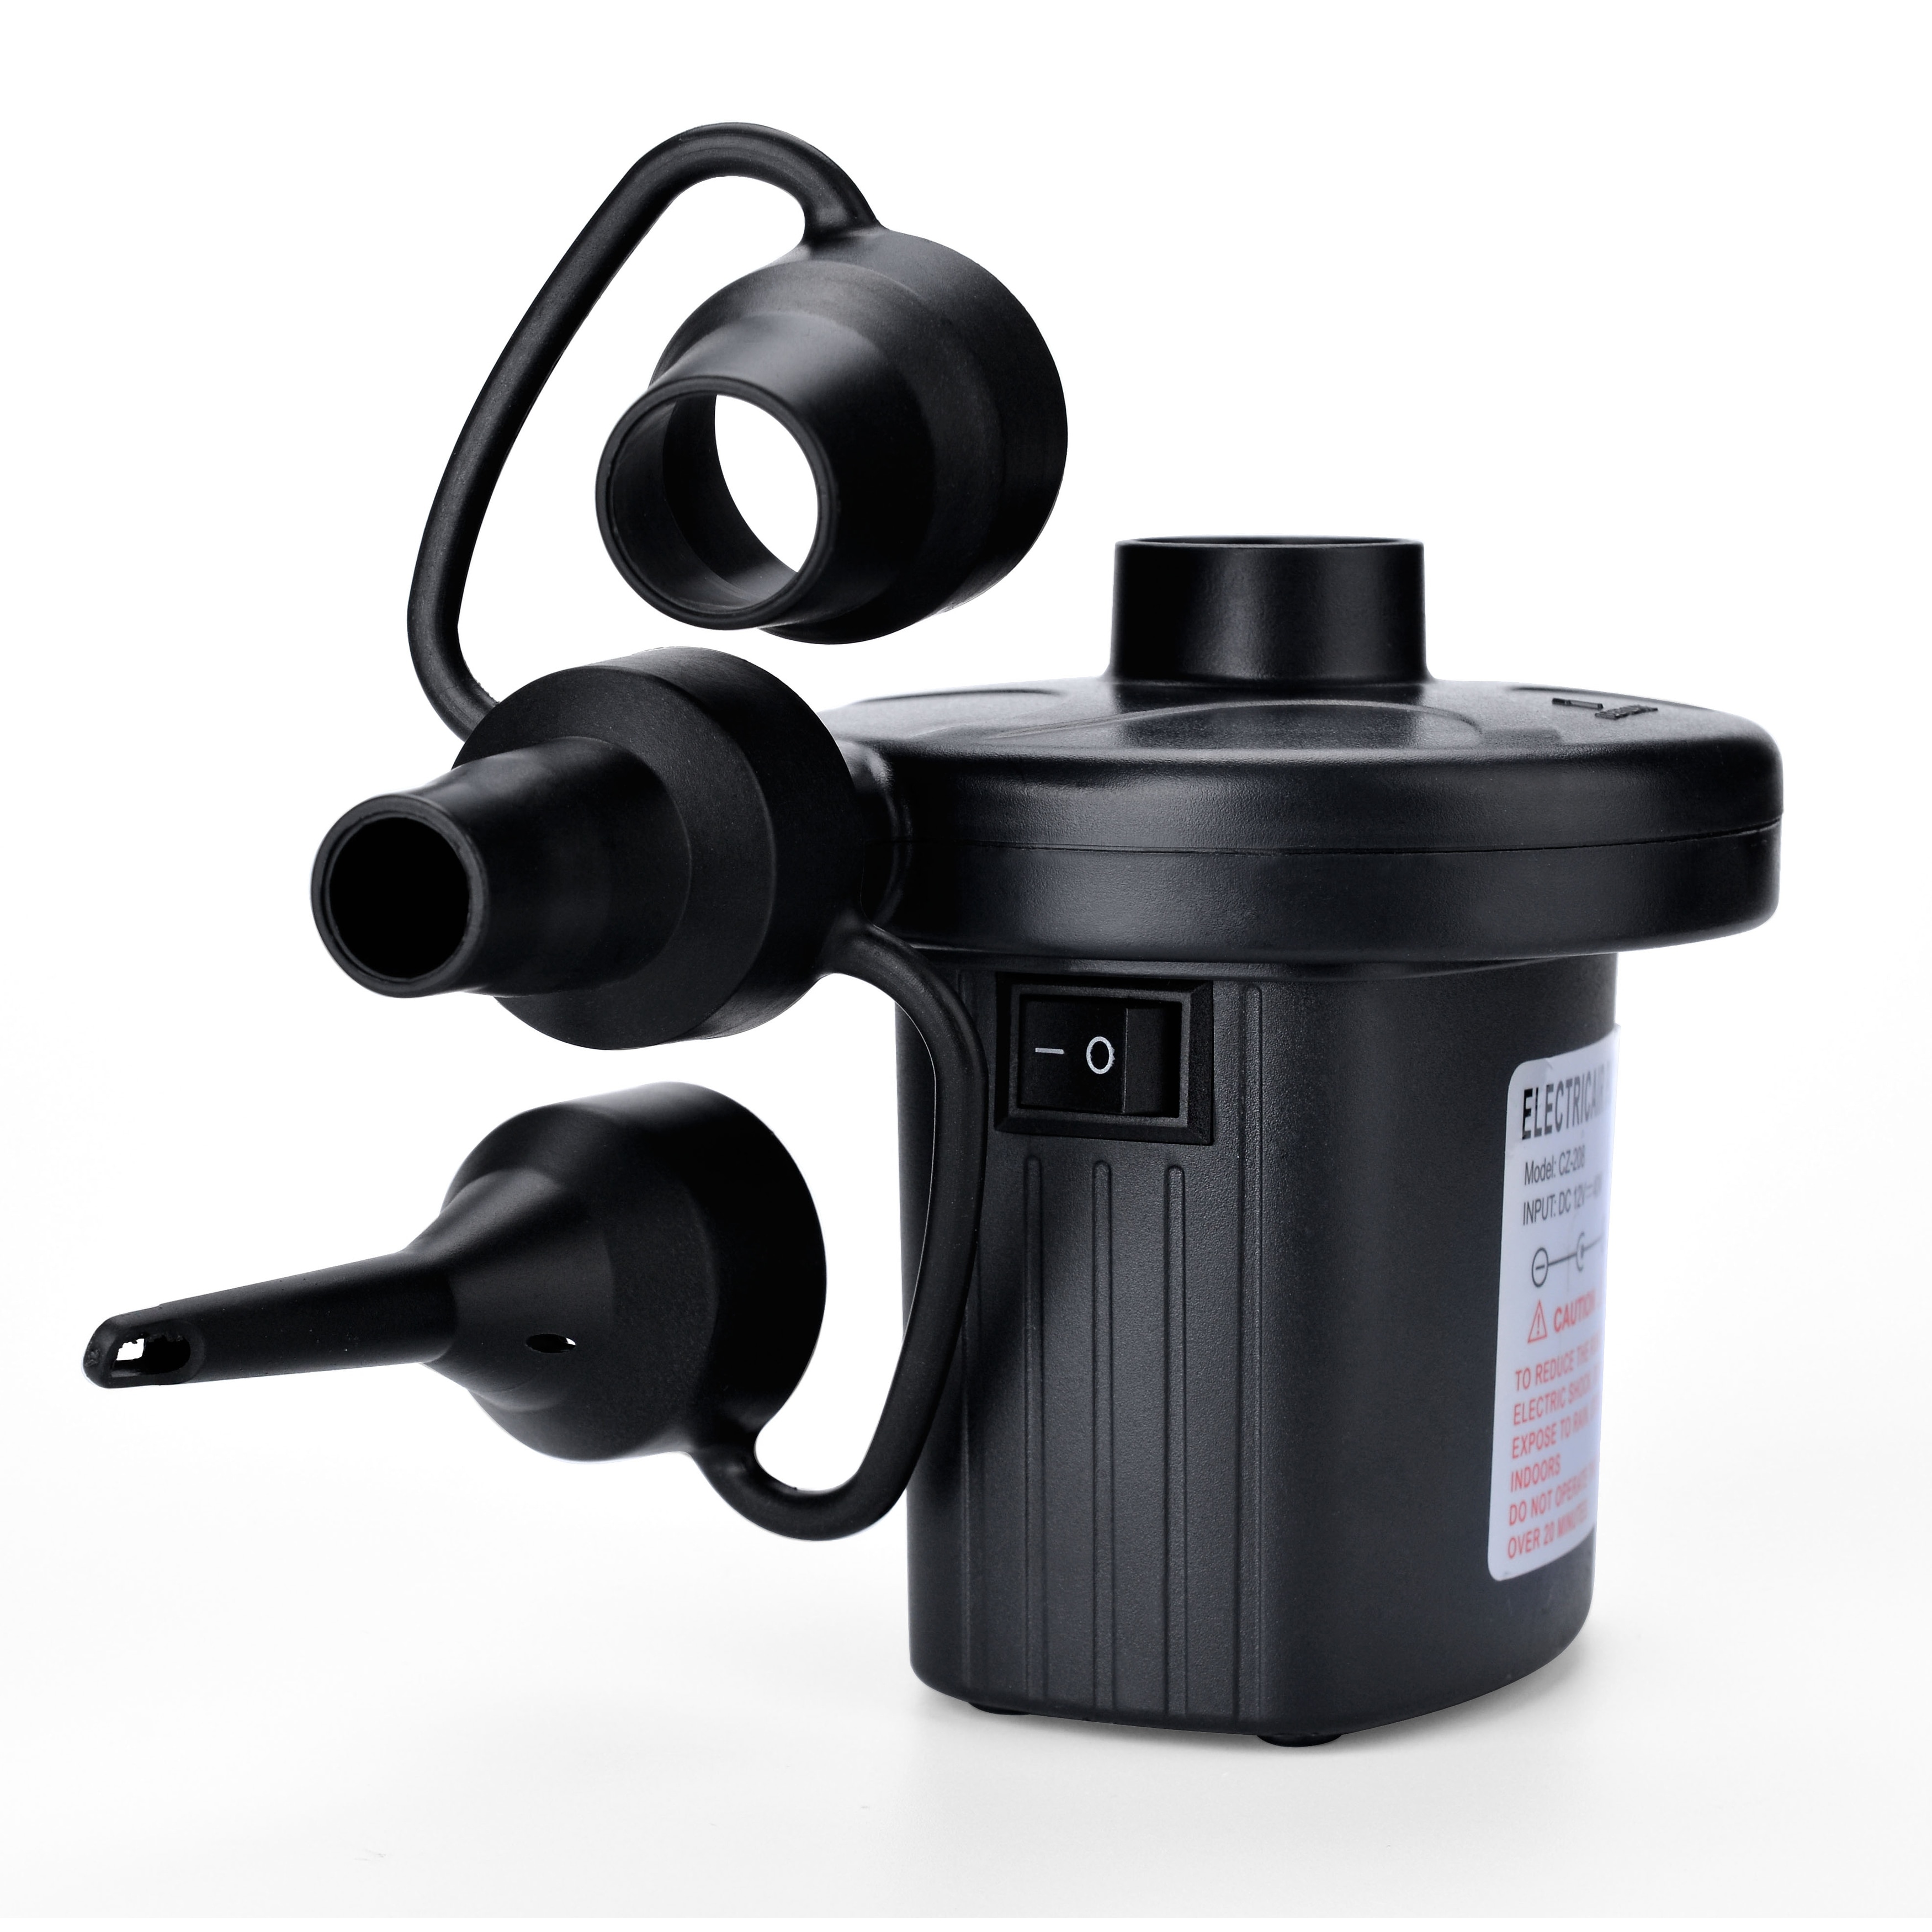 Electric Air Pump, AGPtEK Portable Quick-Fill Air Pump with 3 Nozzles